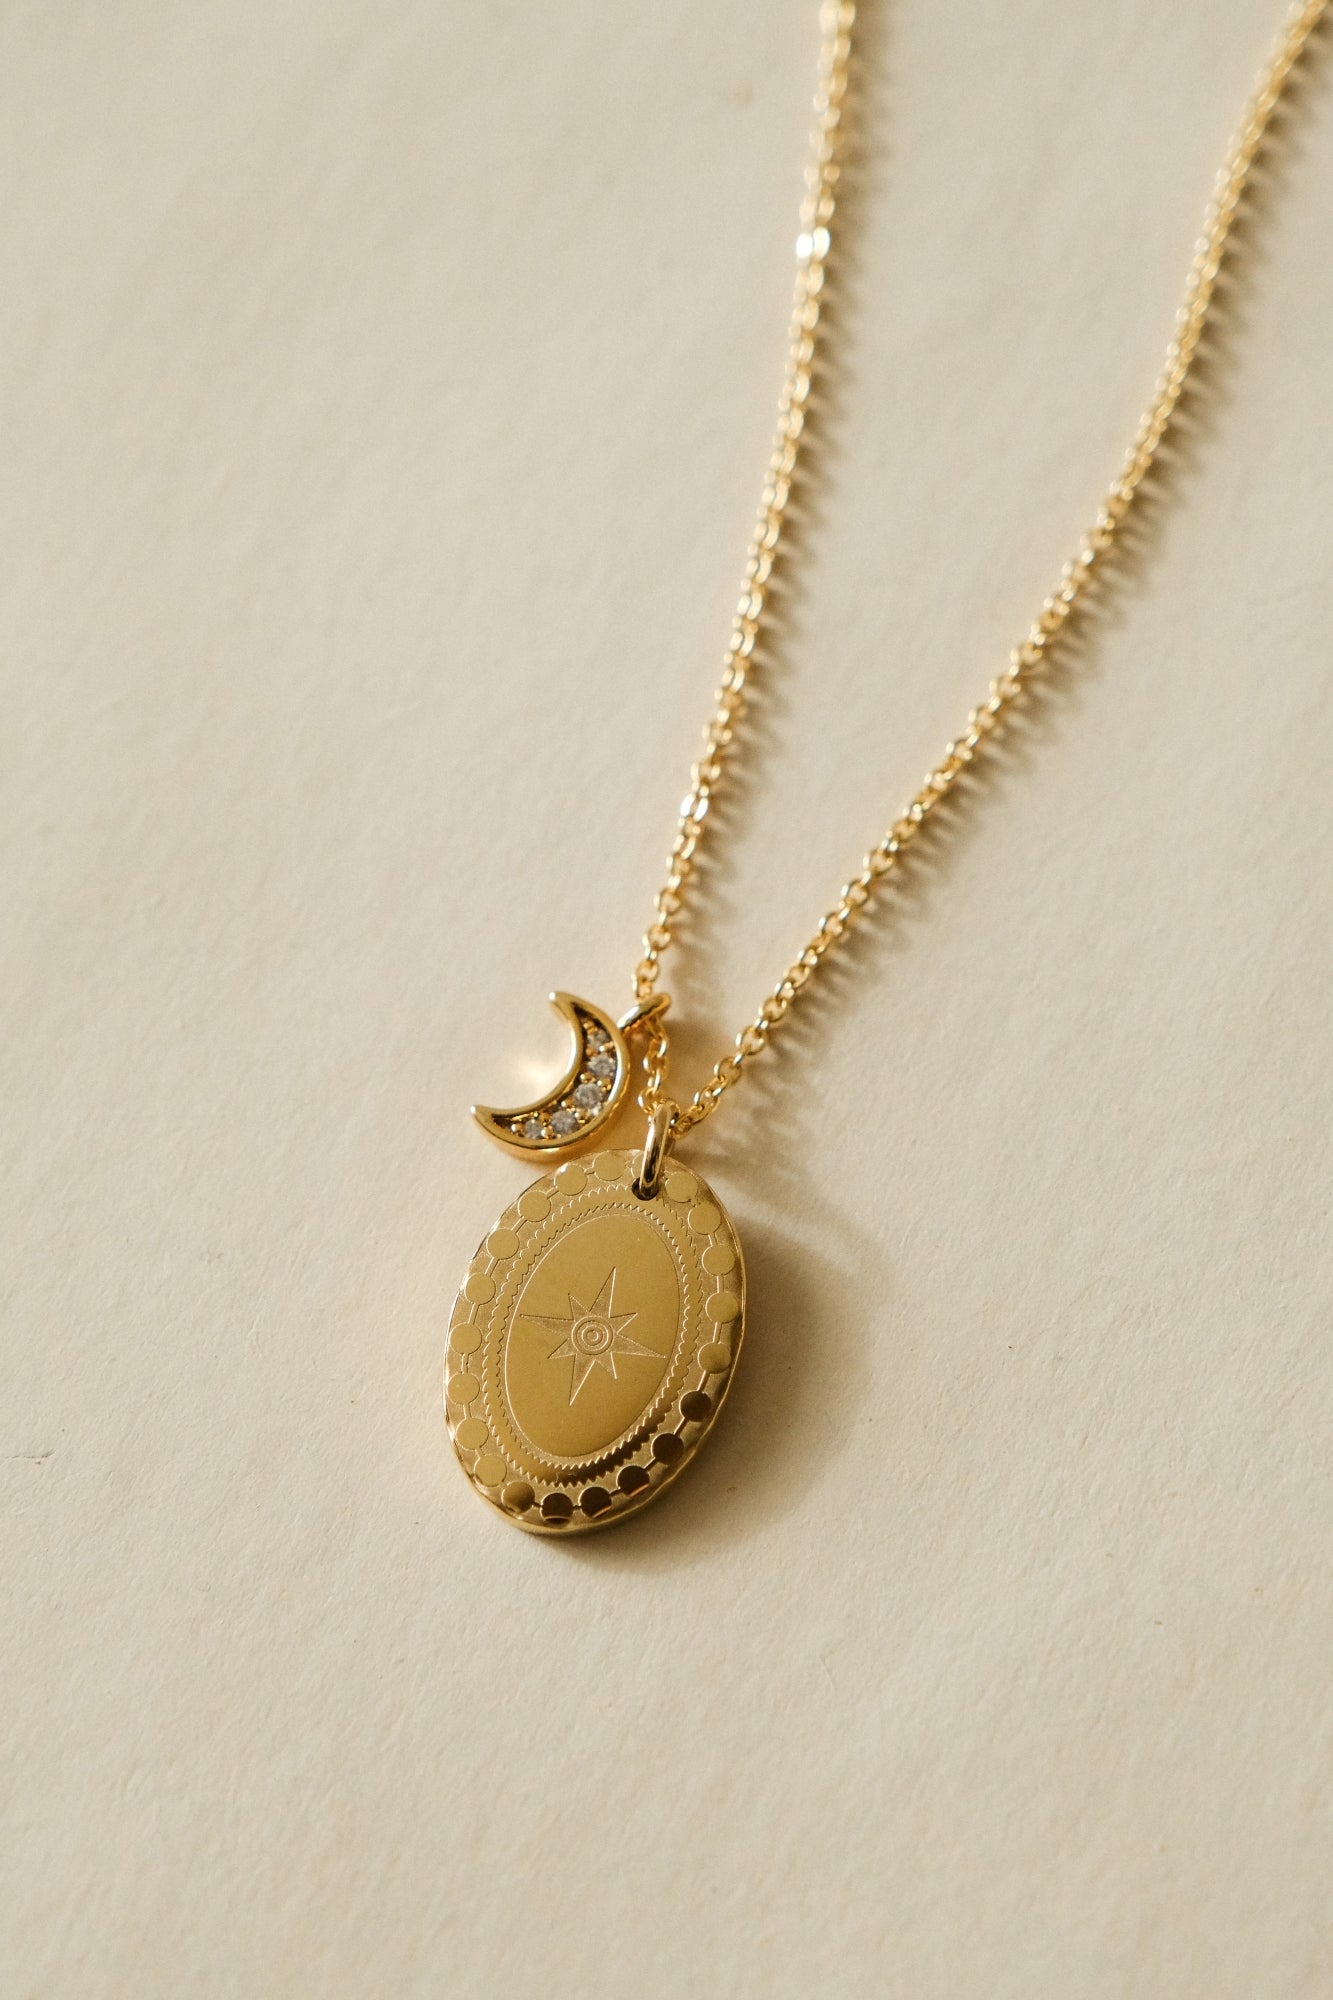 “Malia” necklace